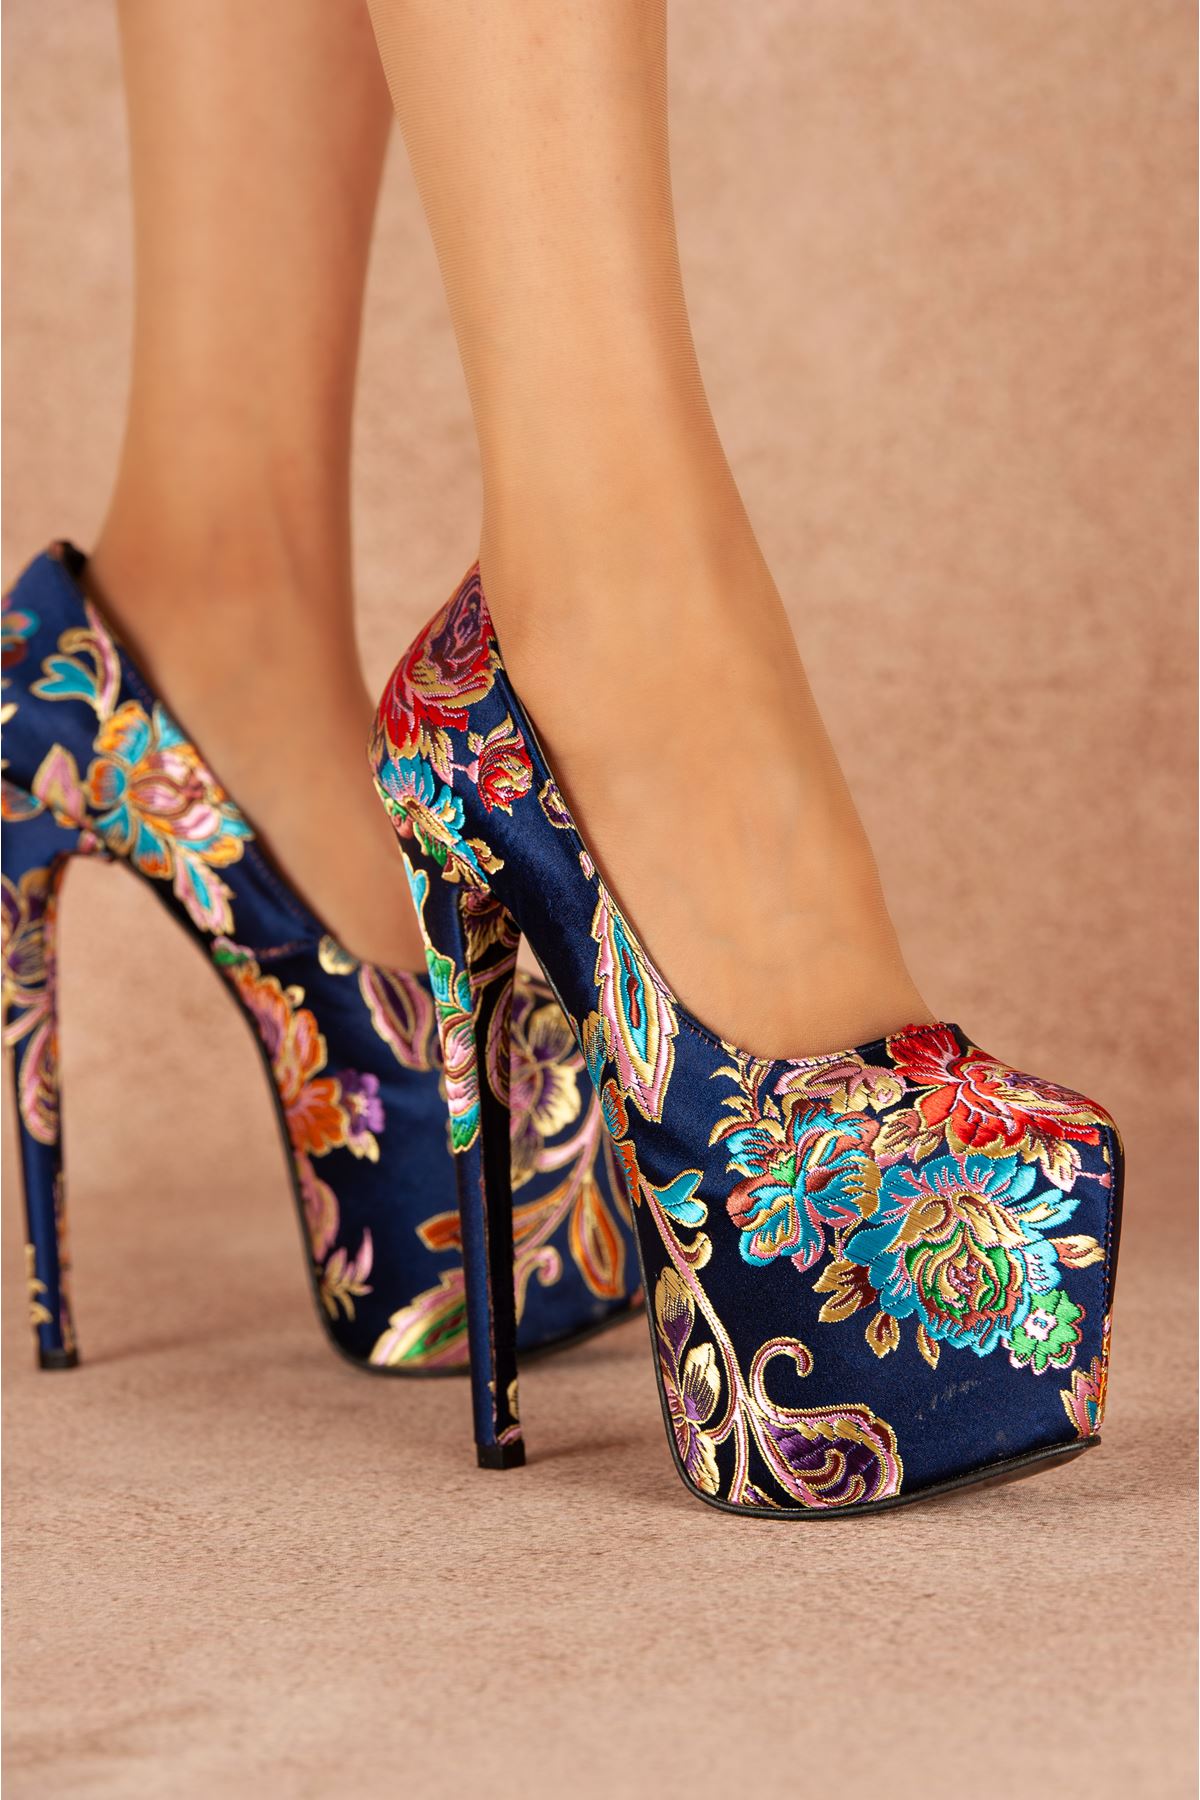 Josie Lacivert Çiçekli Yüksek Kadın Topuklu Ayakkabı 19 Cm